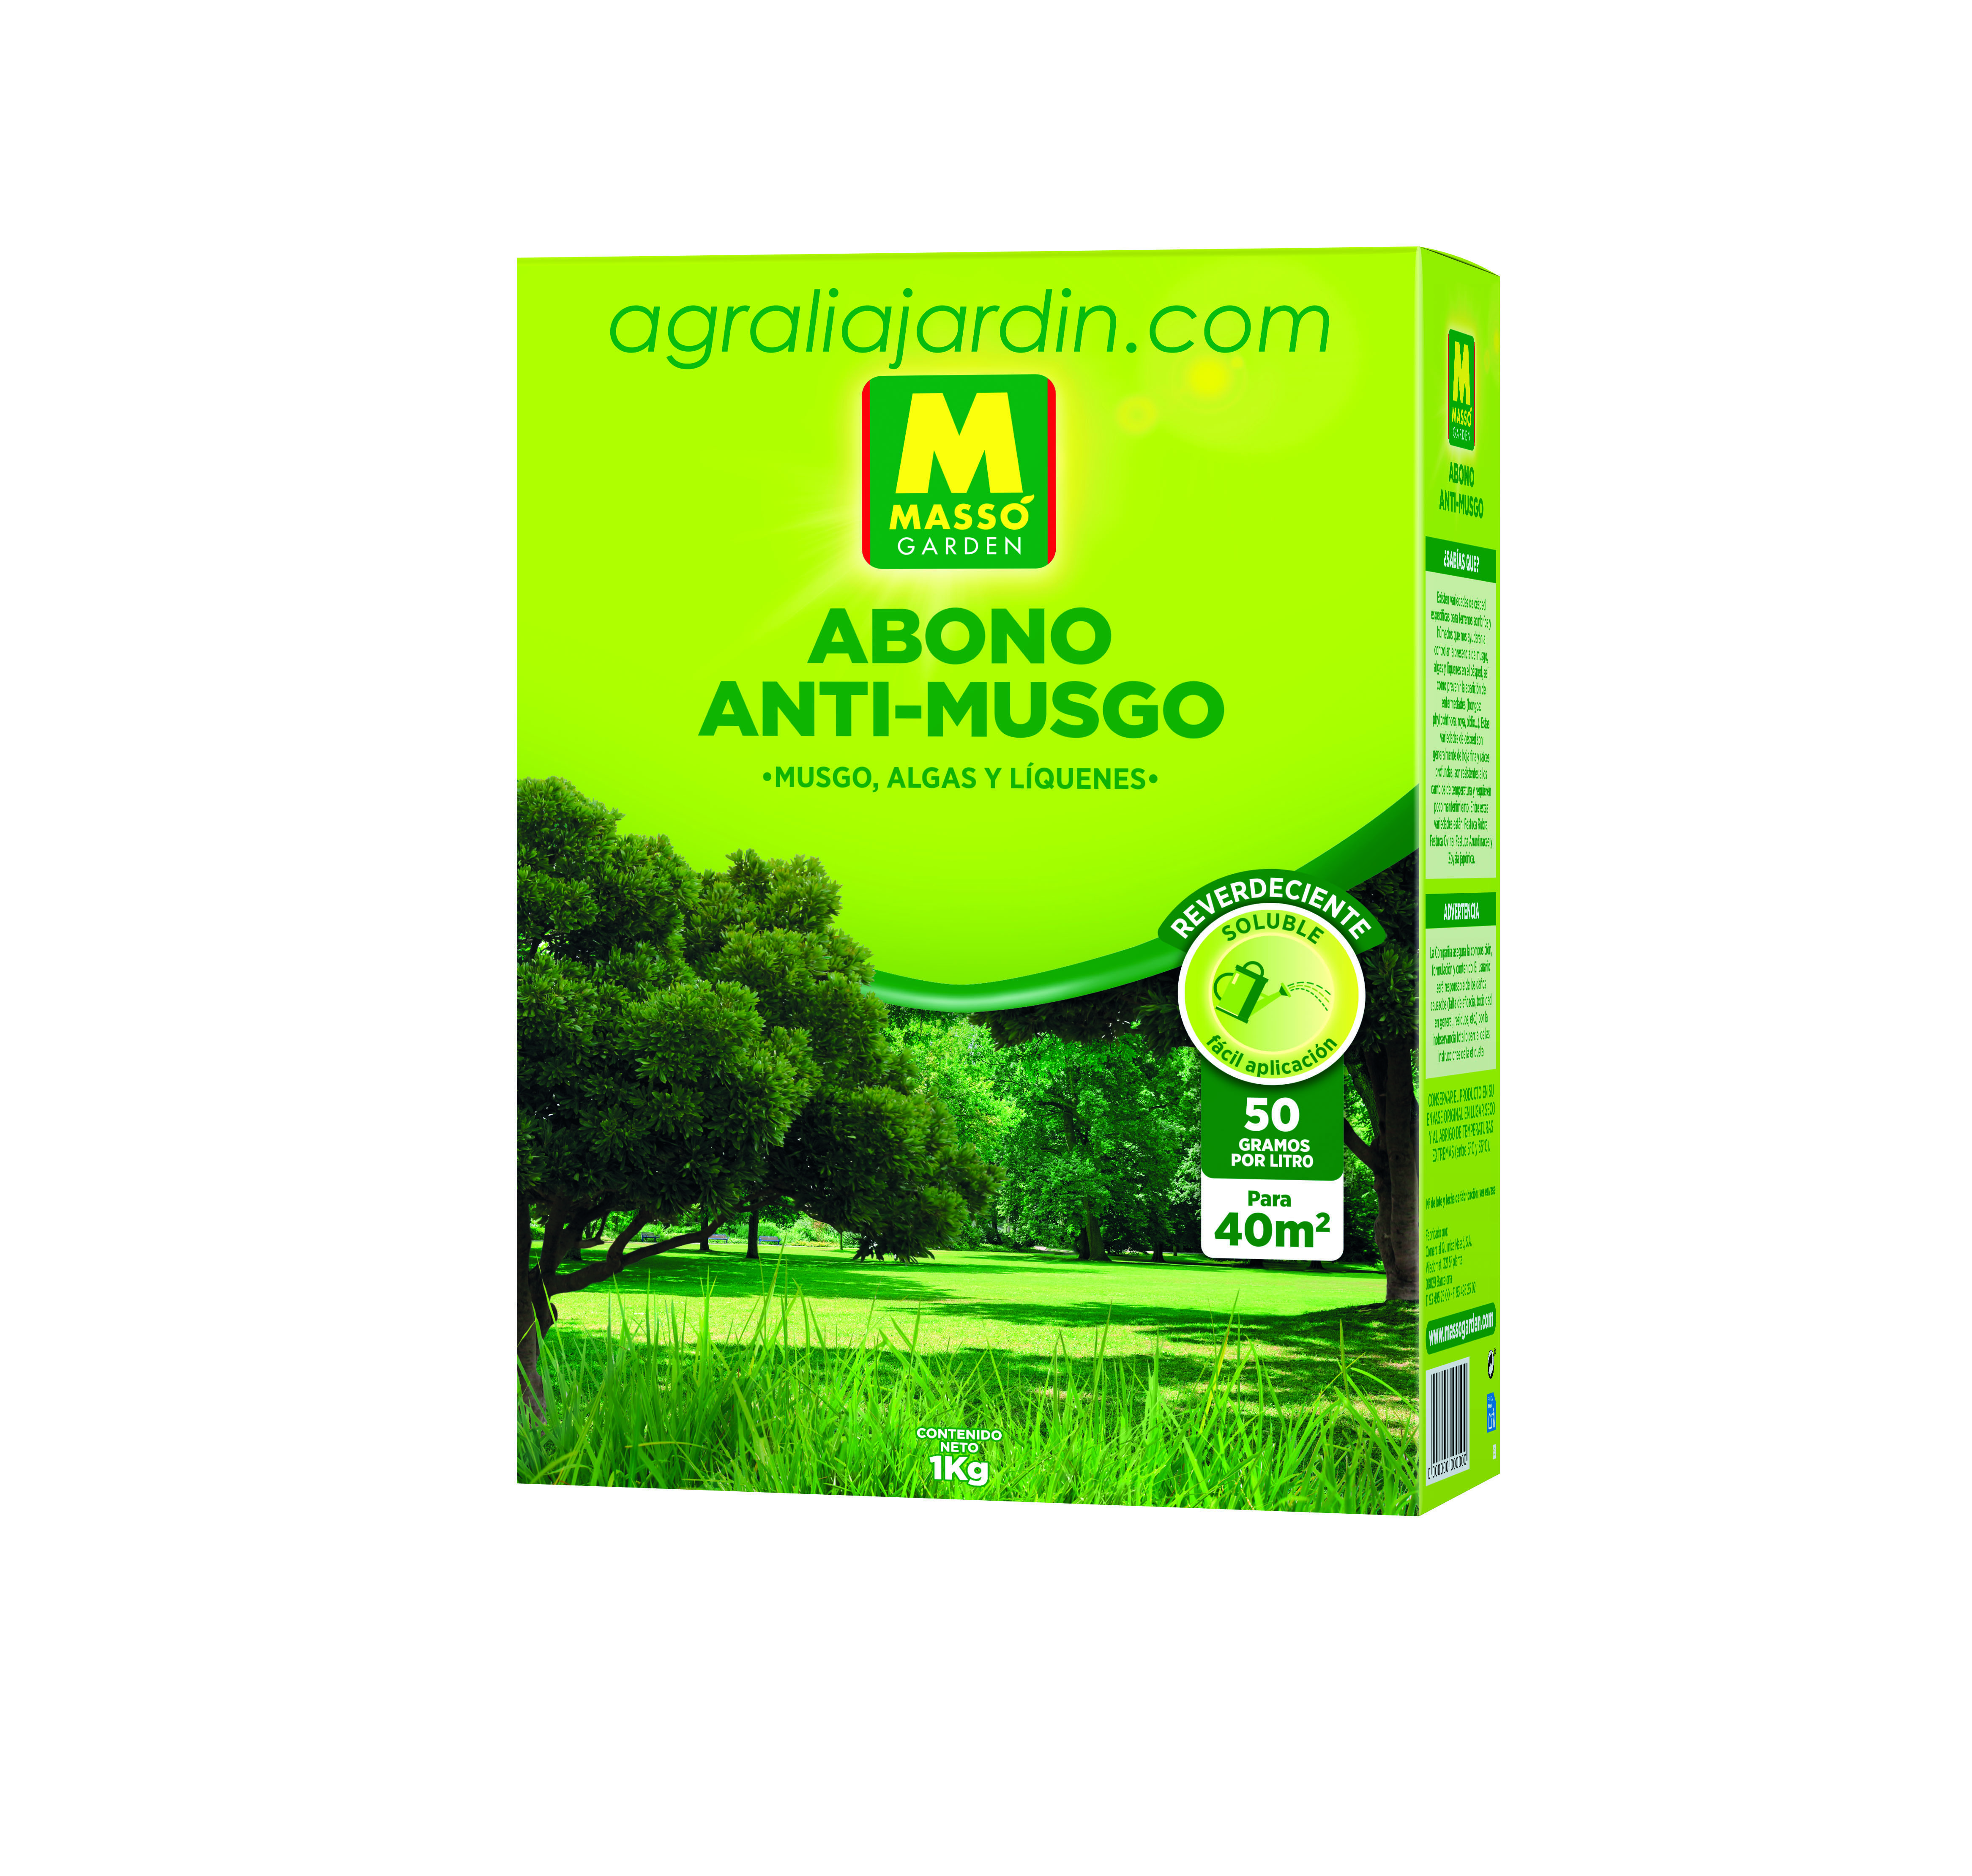 Massó Garden Abono Anti-Musgo 1 kg_agralia online